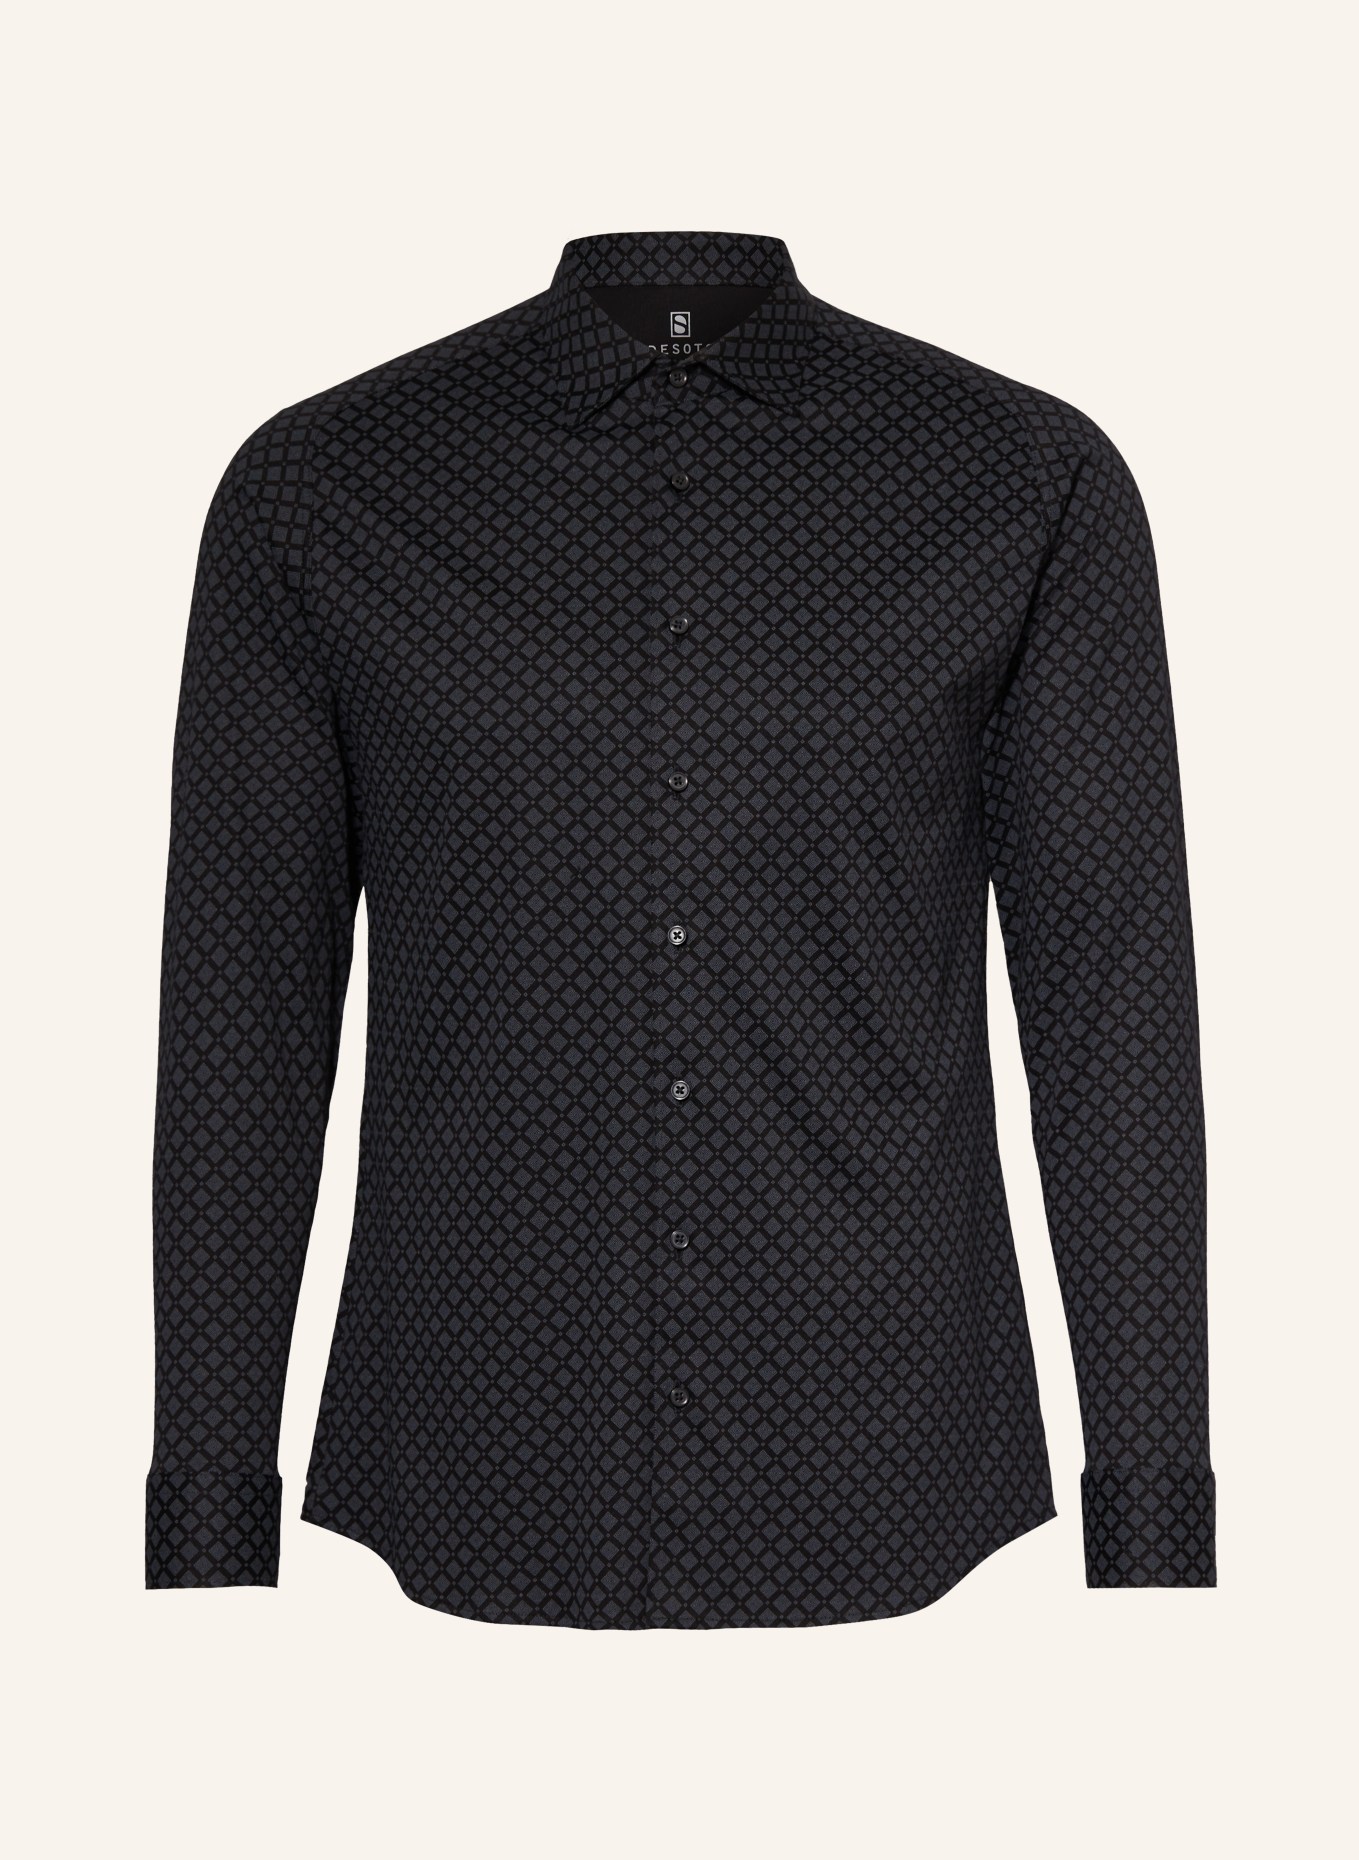 DESOTO Jerseyhemd Slim Fit, Farbe: SCHWARZ/ DUNKELGRAU (Bild 1)